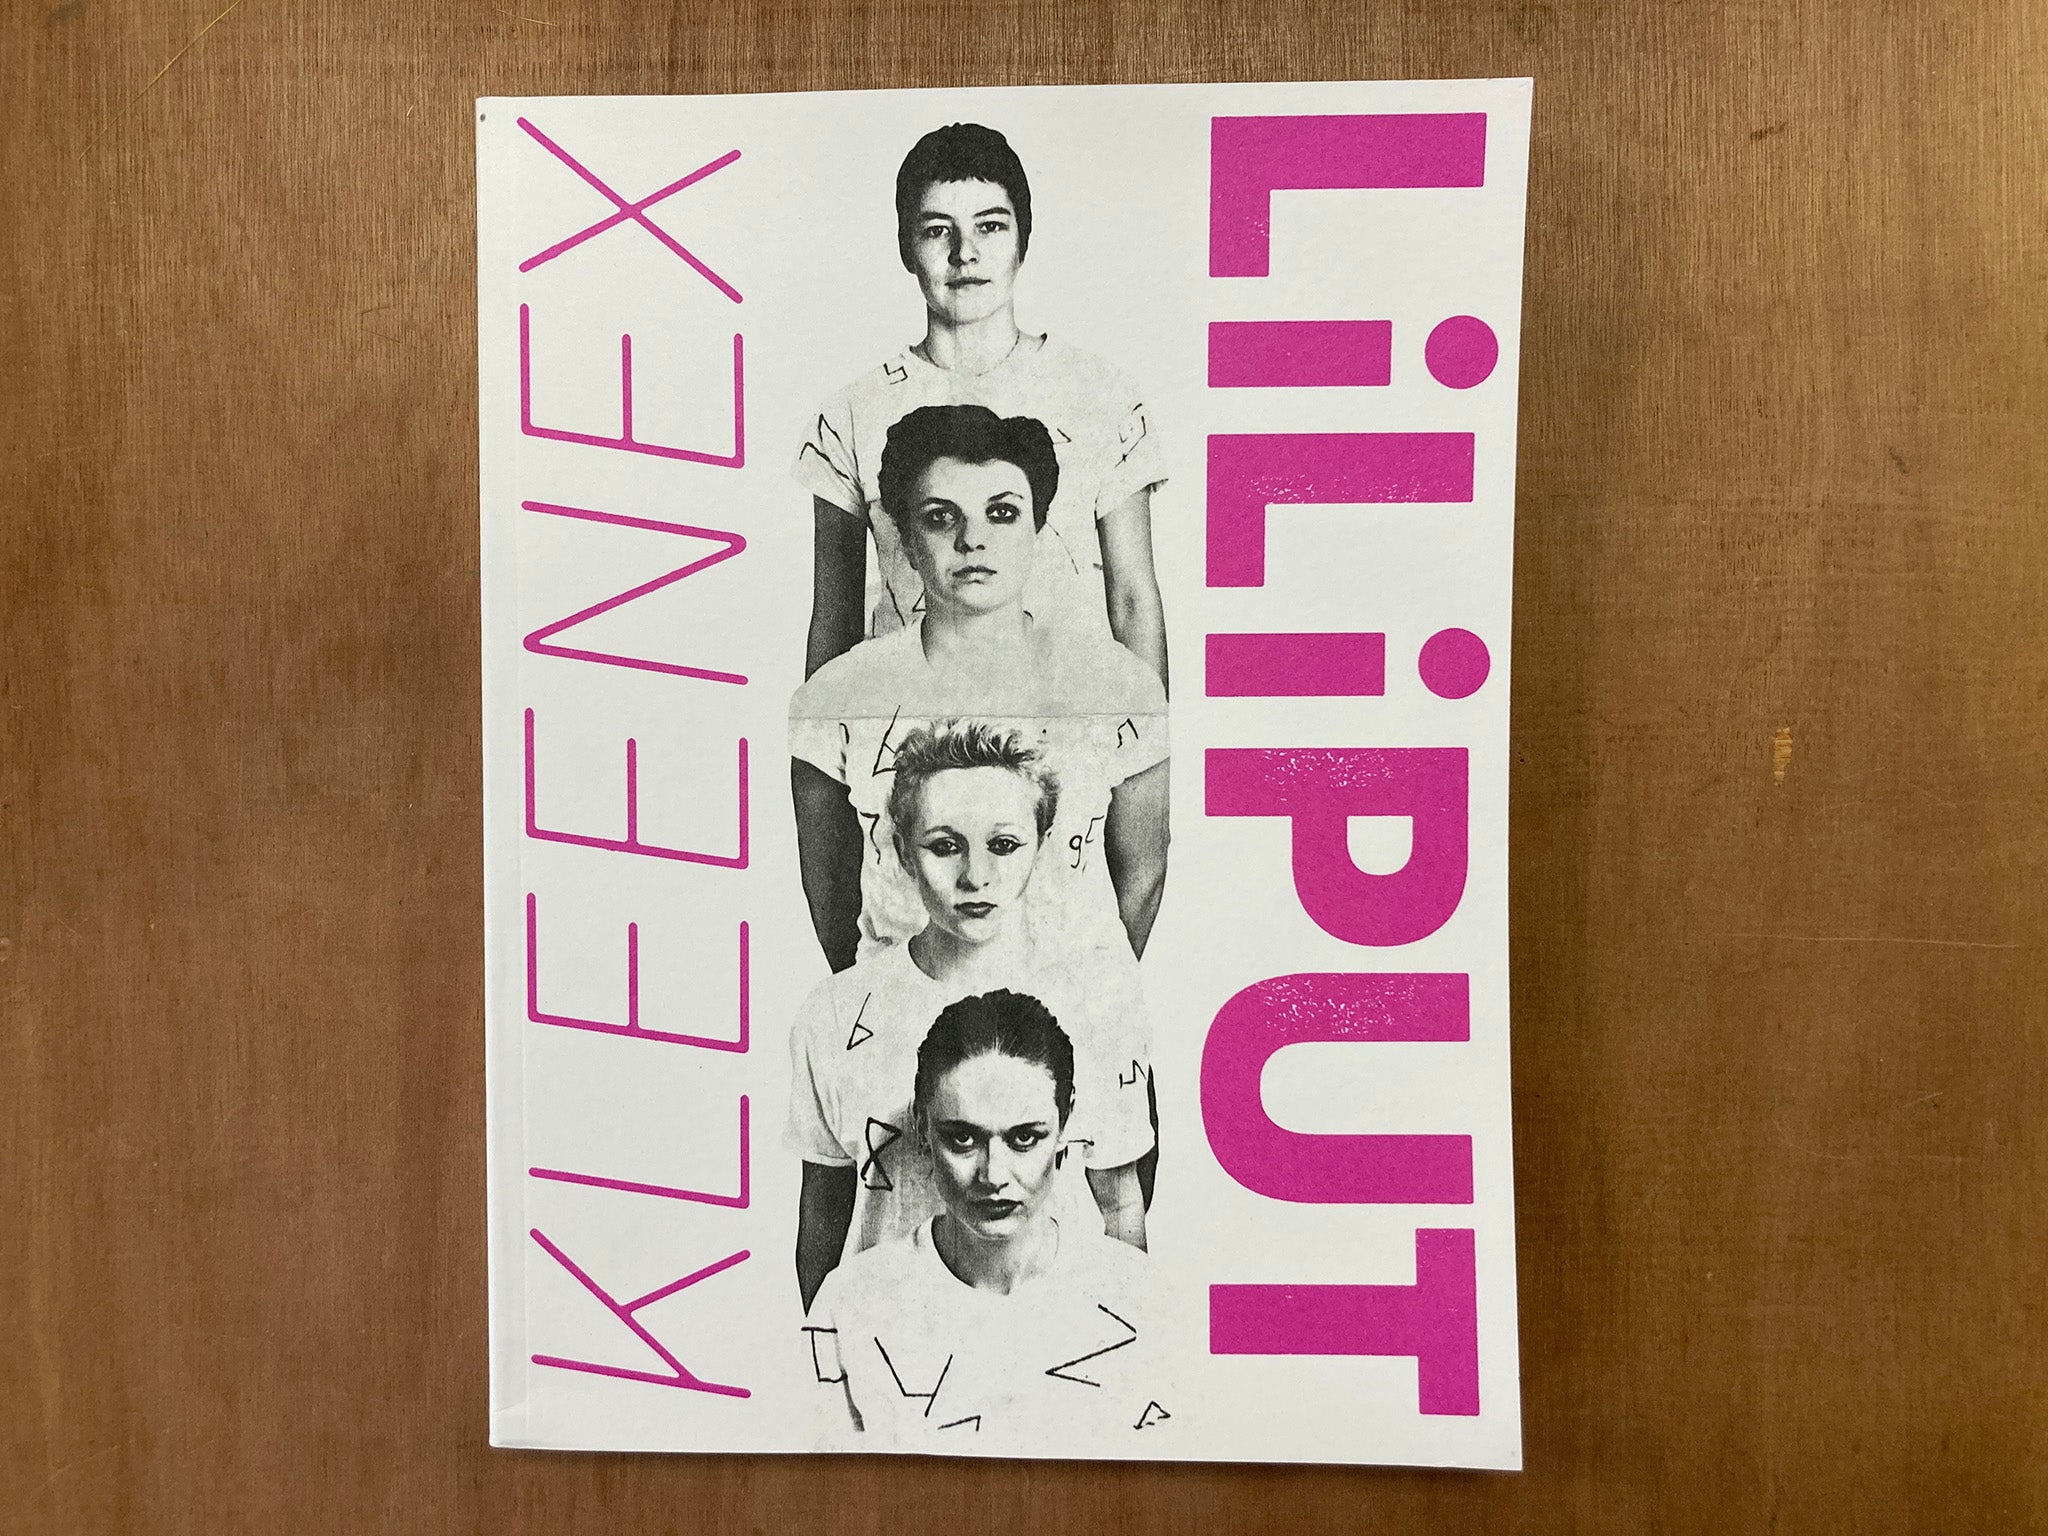 KLEENEX / LILIPUT by Marlene Marder